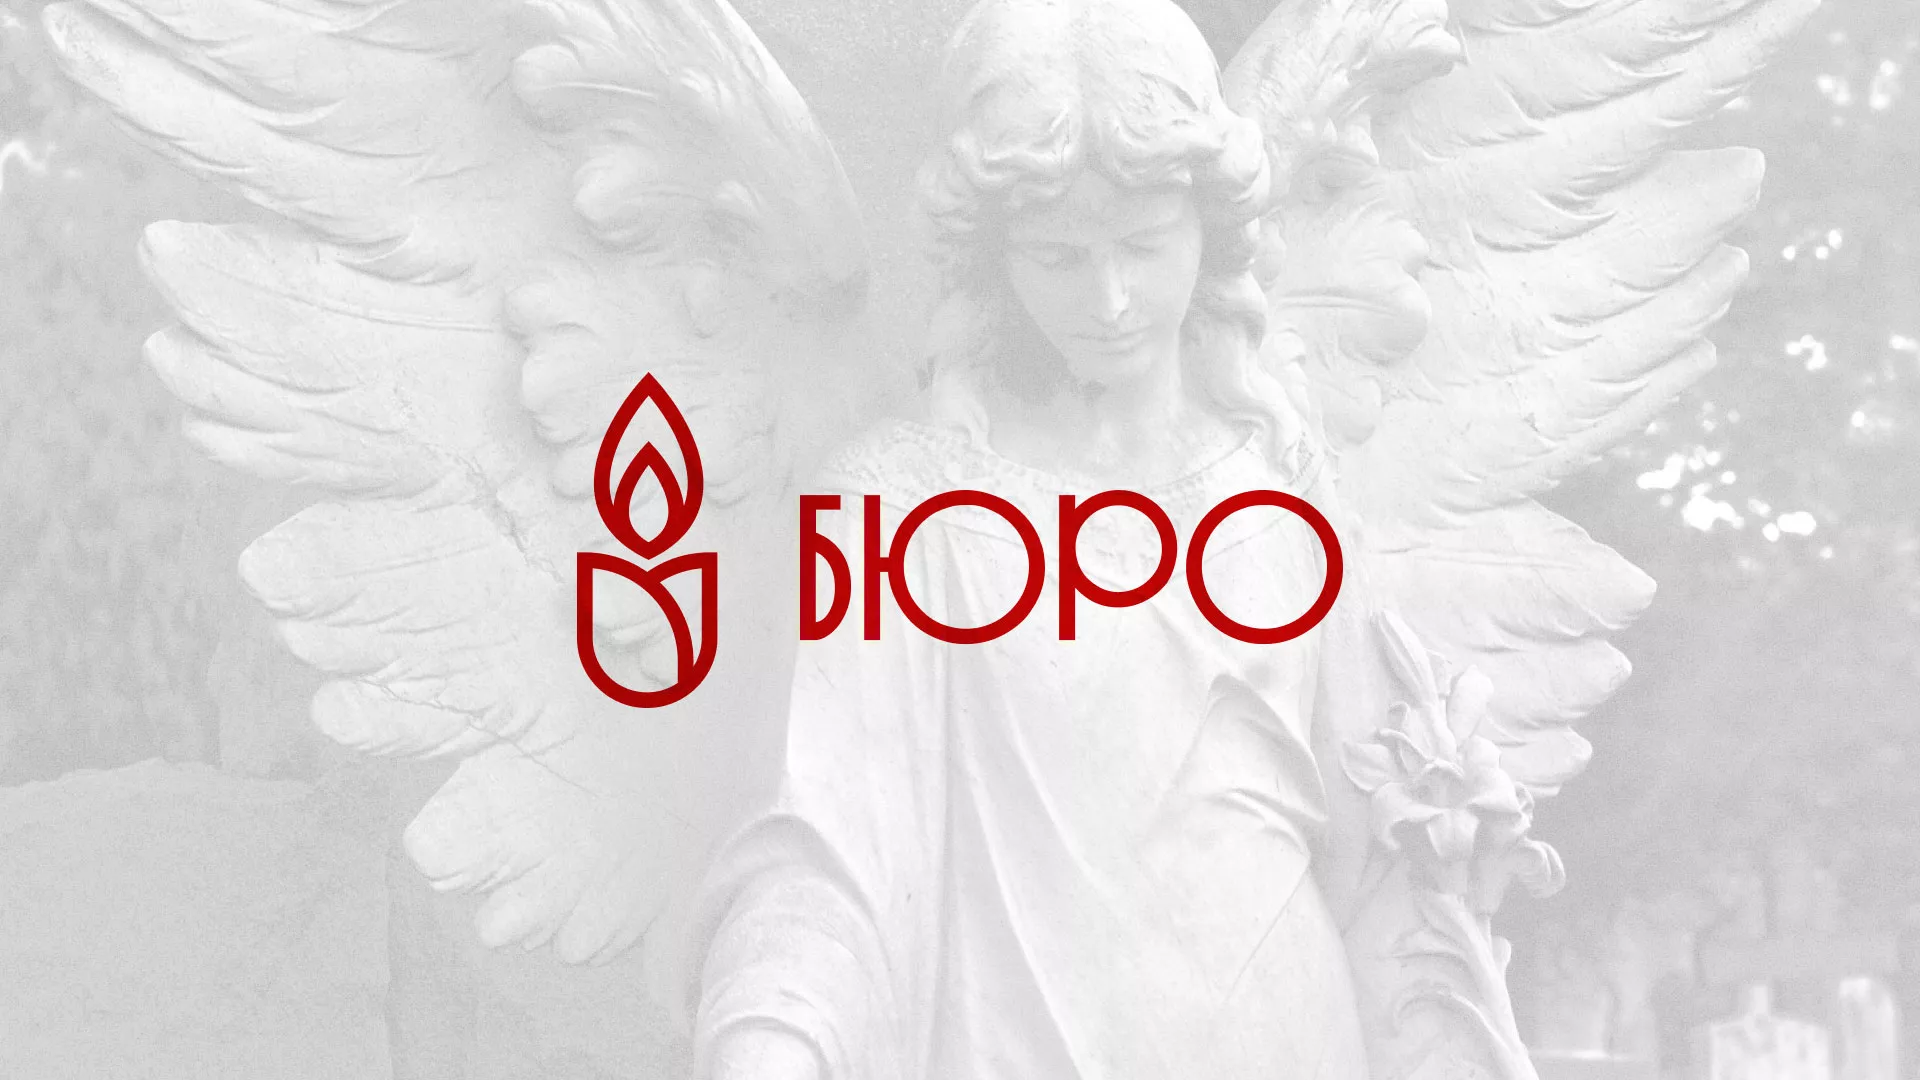 Создание логотипа бюро ритуальных услуг в Звенигово